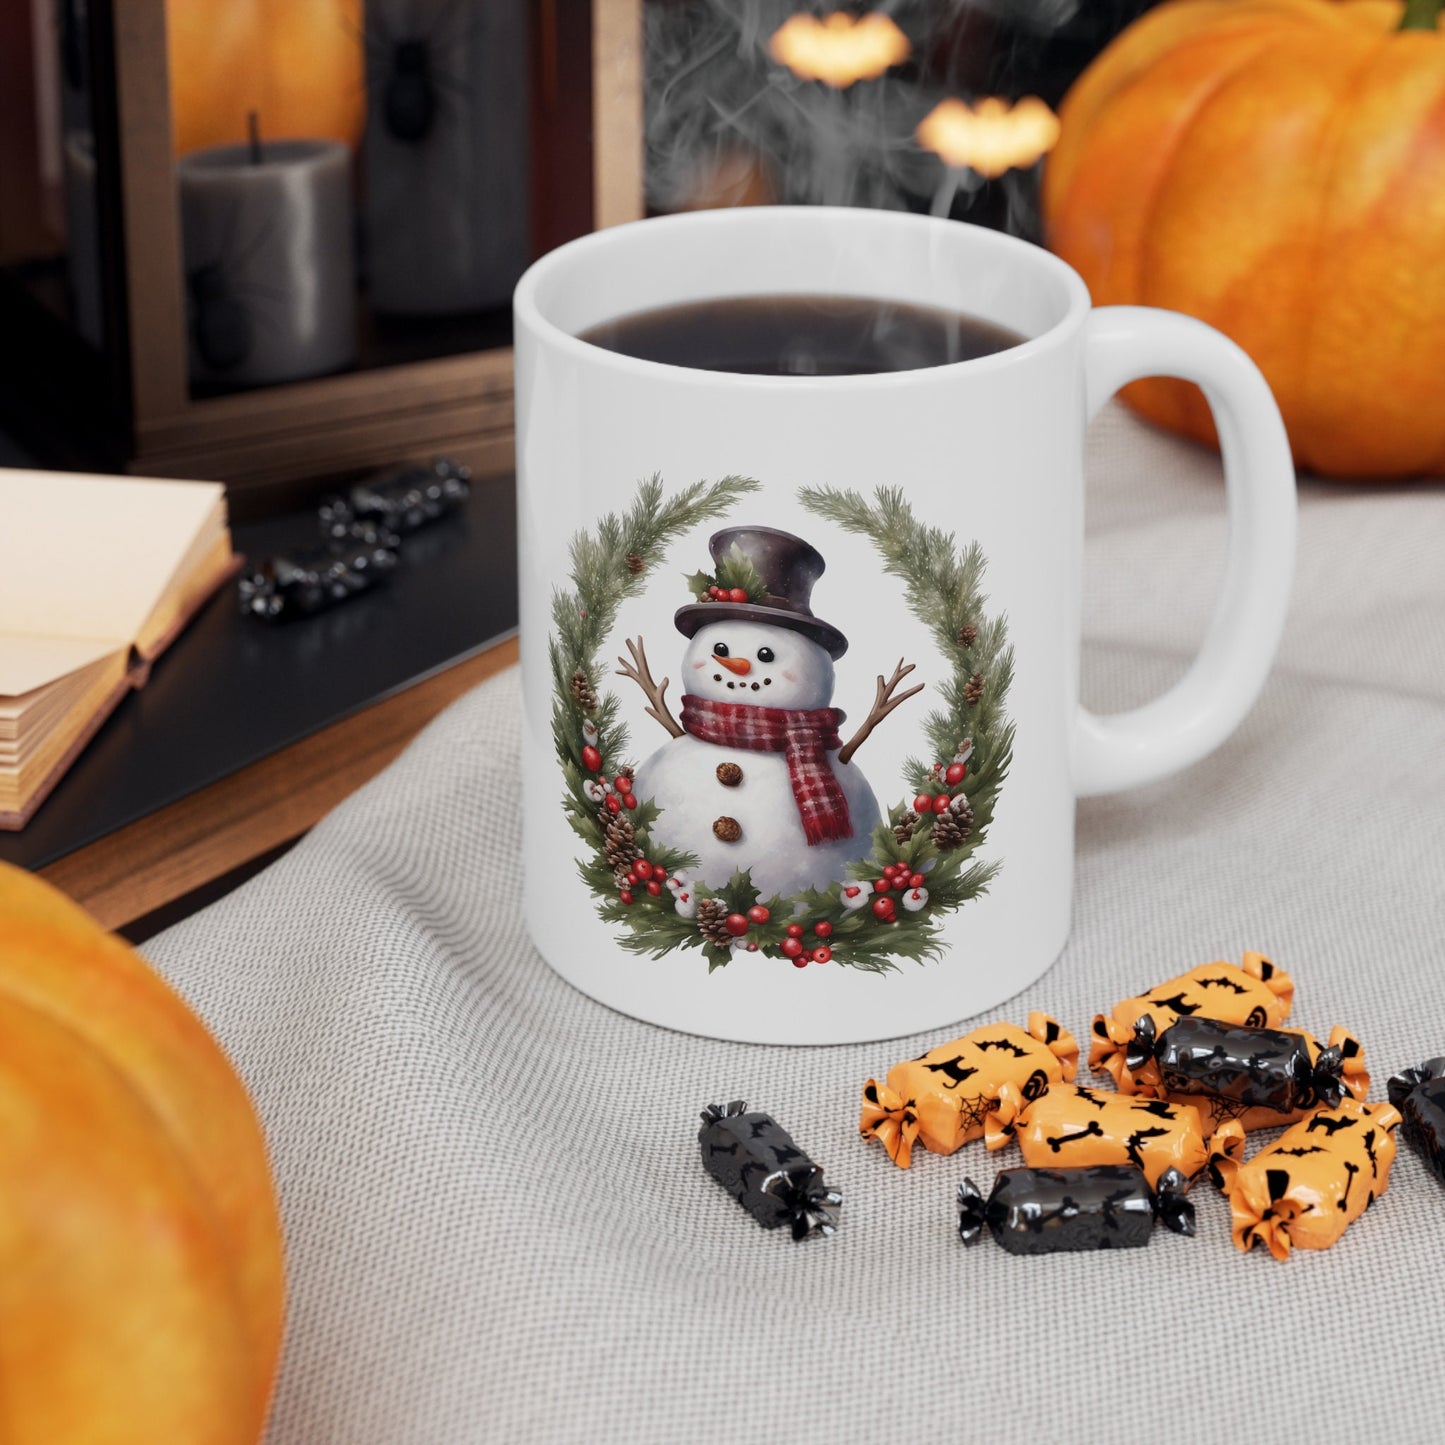 Snowman Reef Christmas Mug, Perfect Holiday Cheer Coffee Mug, Gift Mug for Christmas Spirit, Cute X-Mas mug for Family and friends